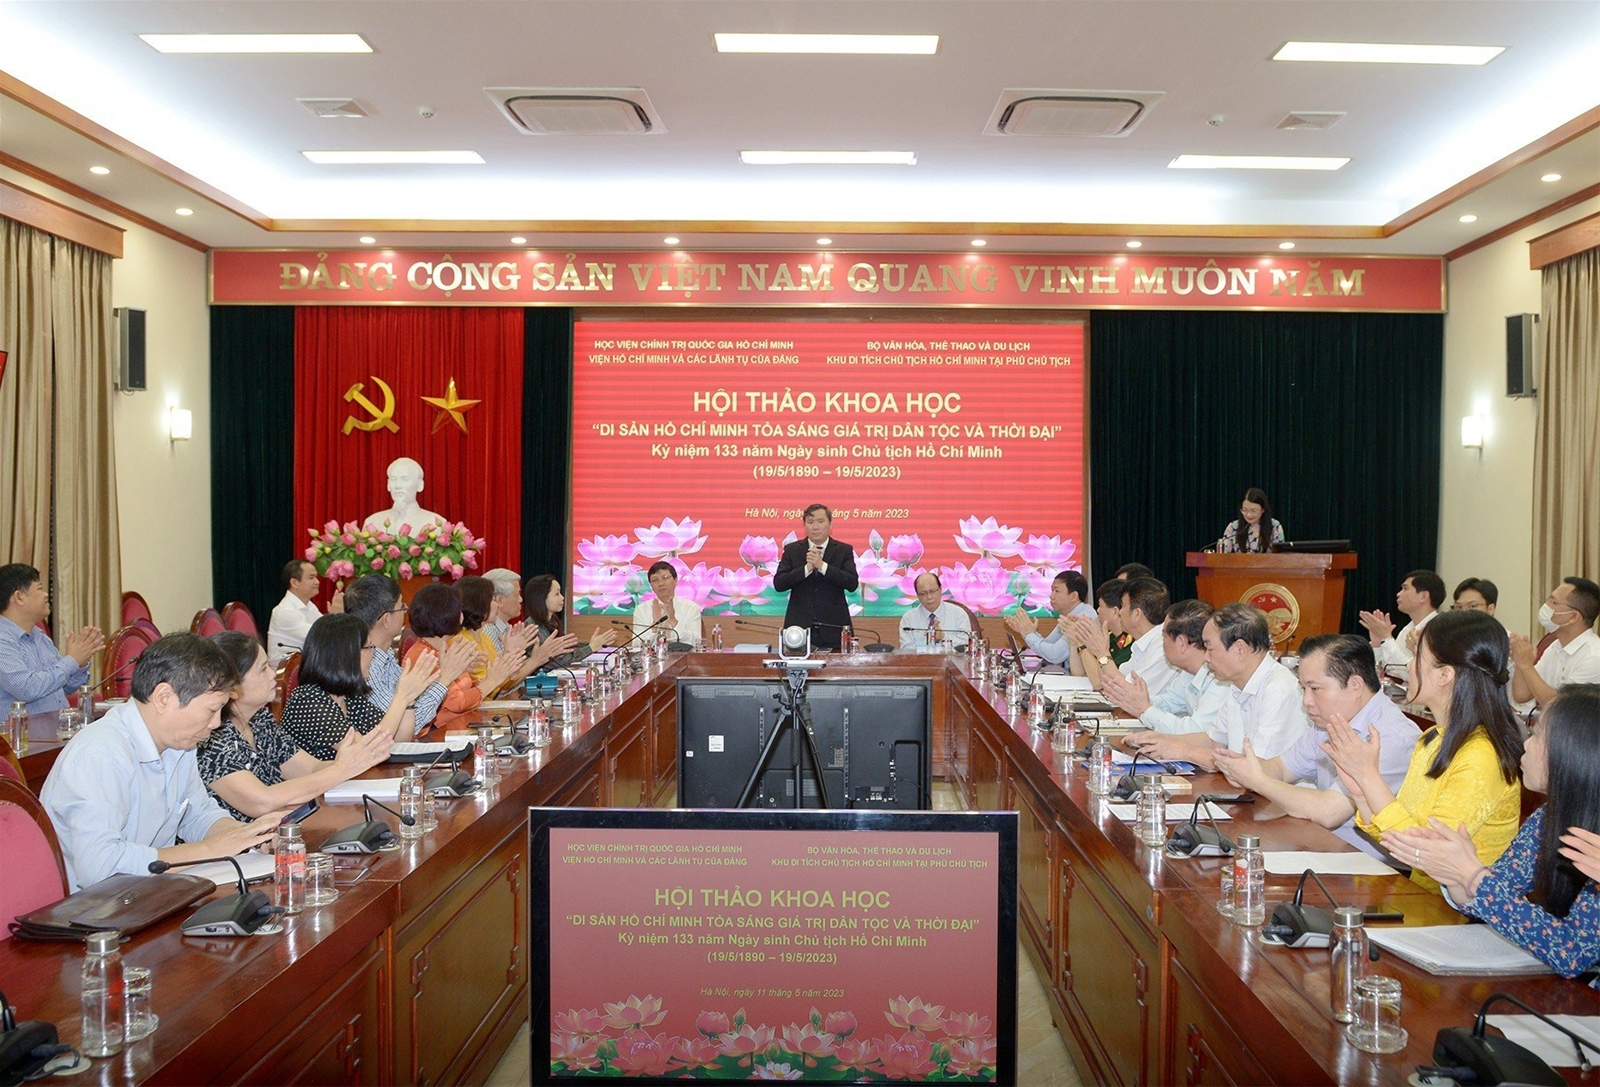 Hội thảo khoa học: “Di sản Hồ Chí Minh toả sáng giá trị dân tộc và thời đại” (ngày 11/5/2023)